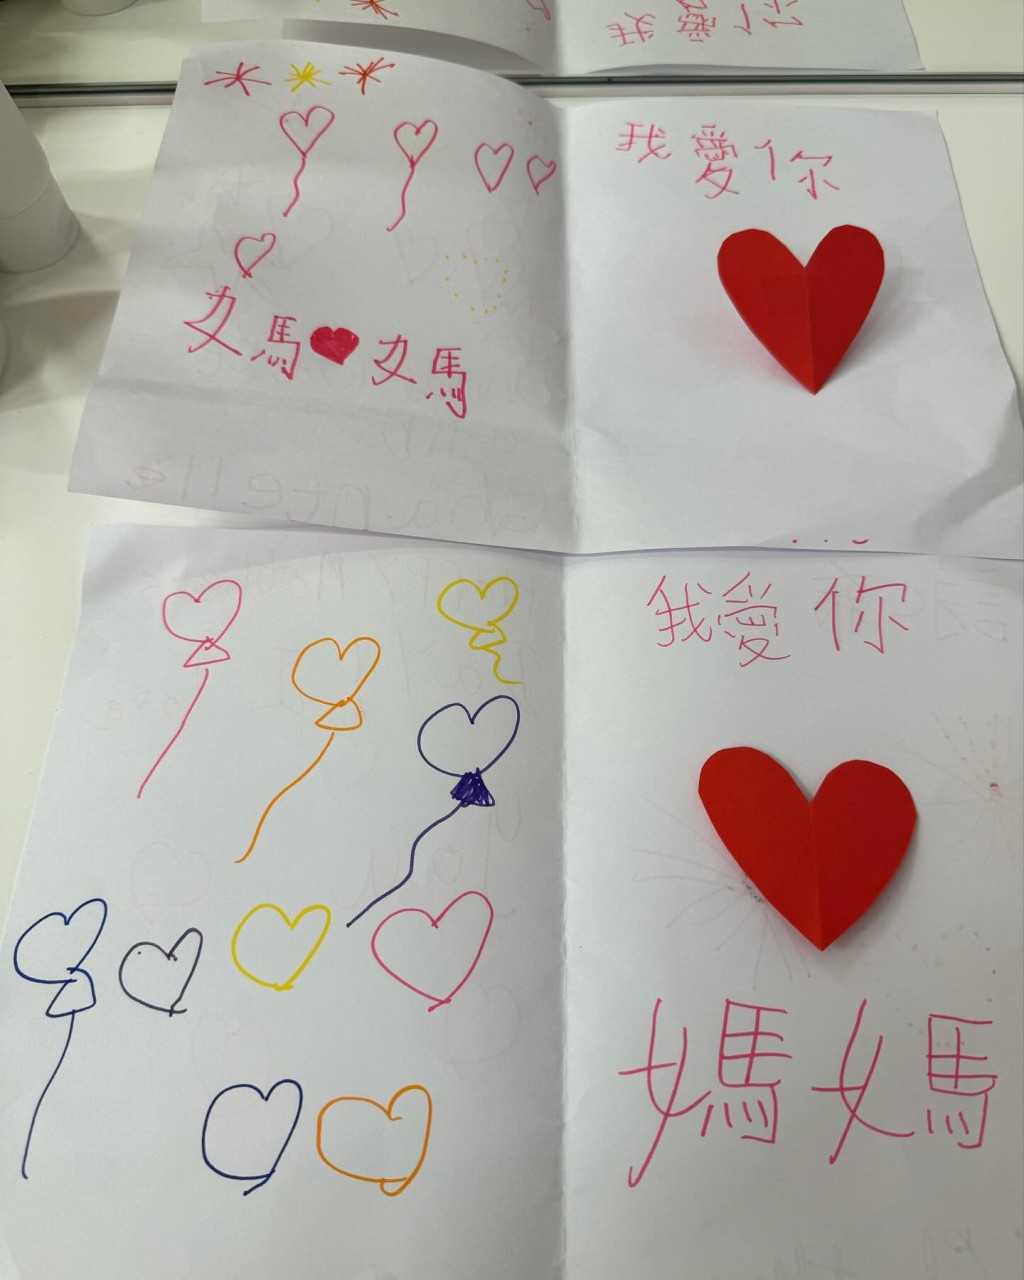 心意卡的内页用上红、橙、黄及蓝色画上烟花及气球，并在右边贴上心心，并再写上“我爱你 妈妈”字体简洁整齐。